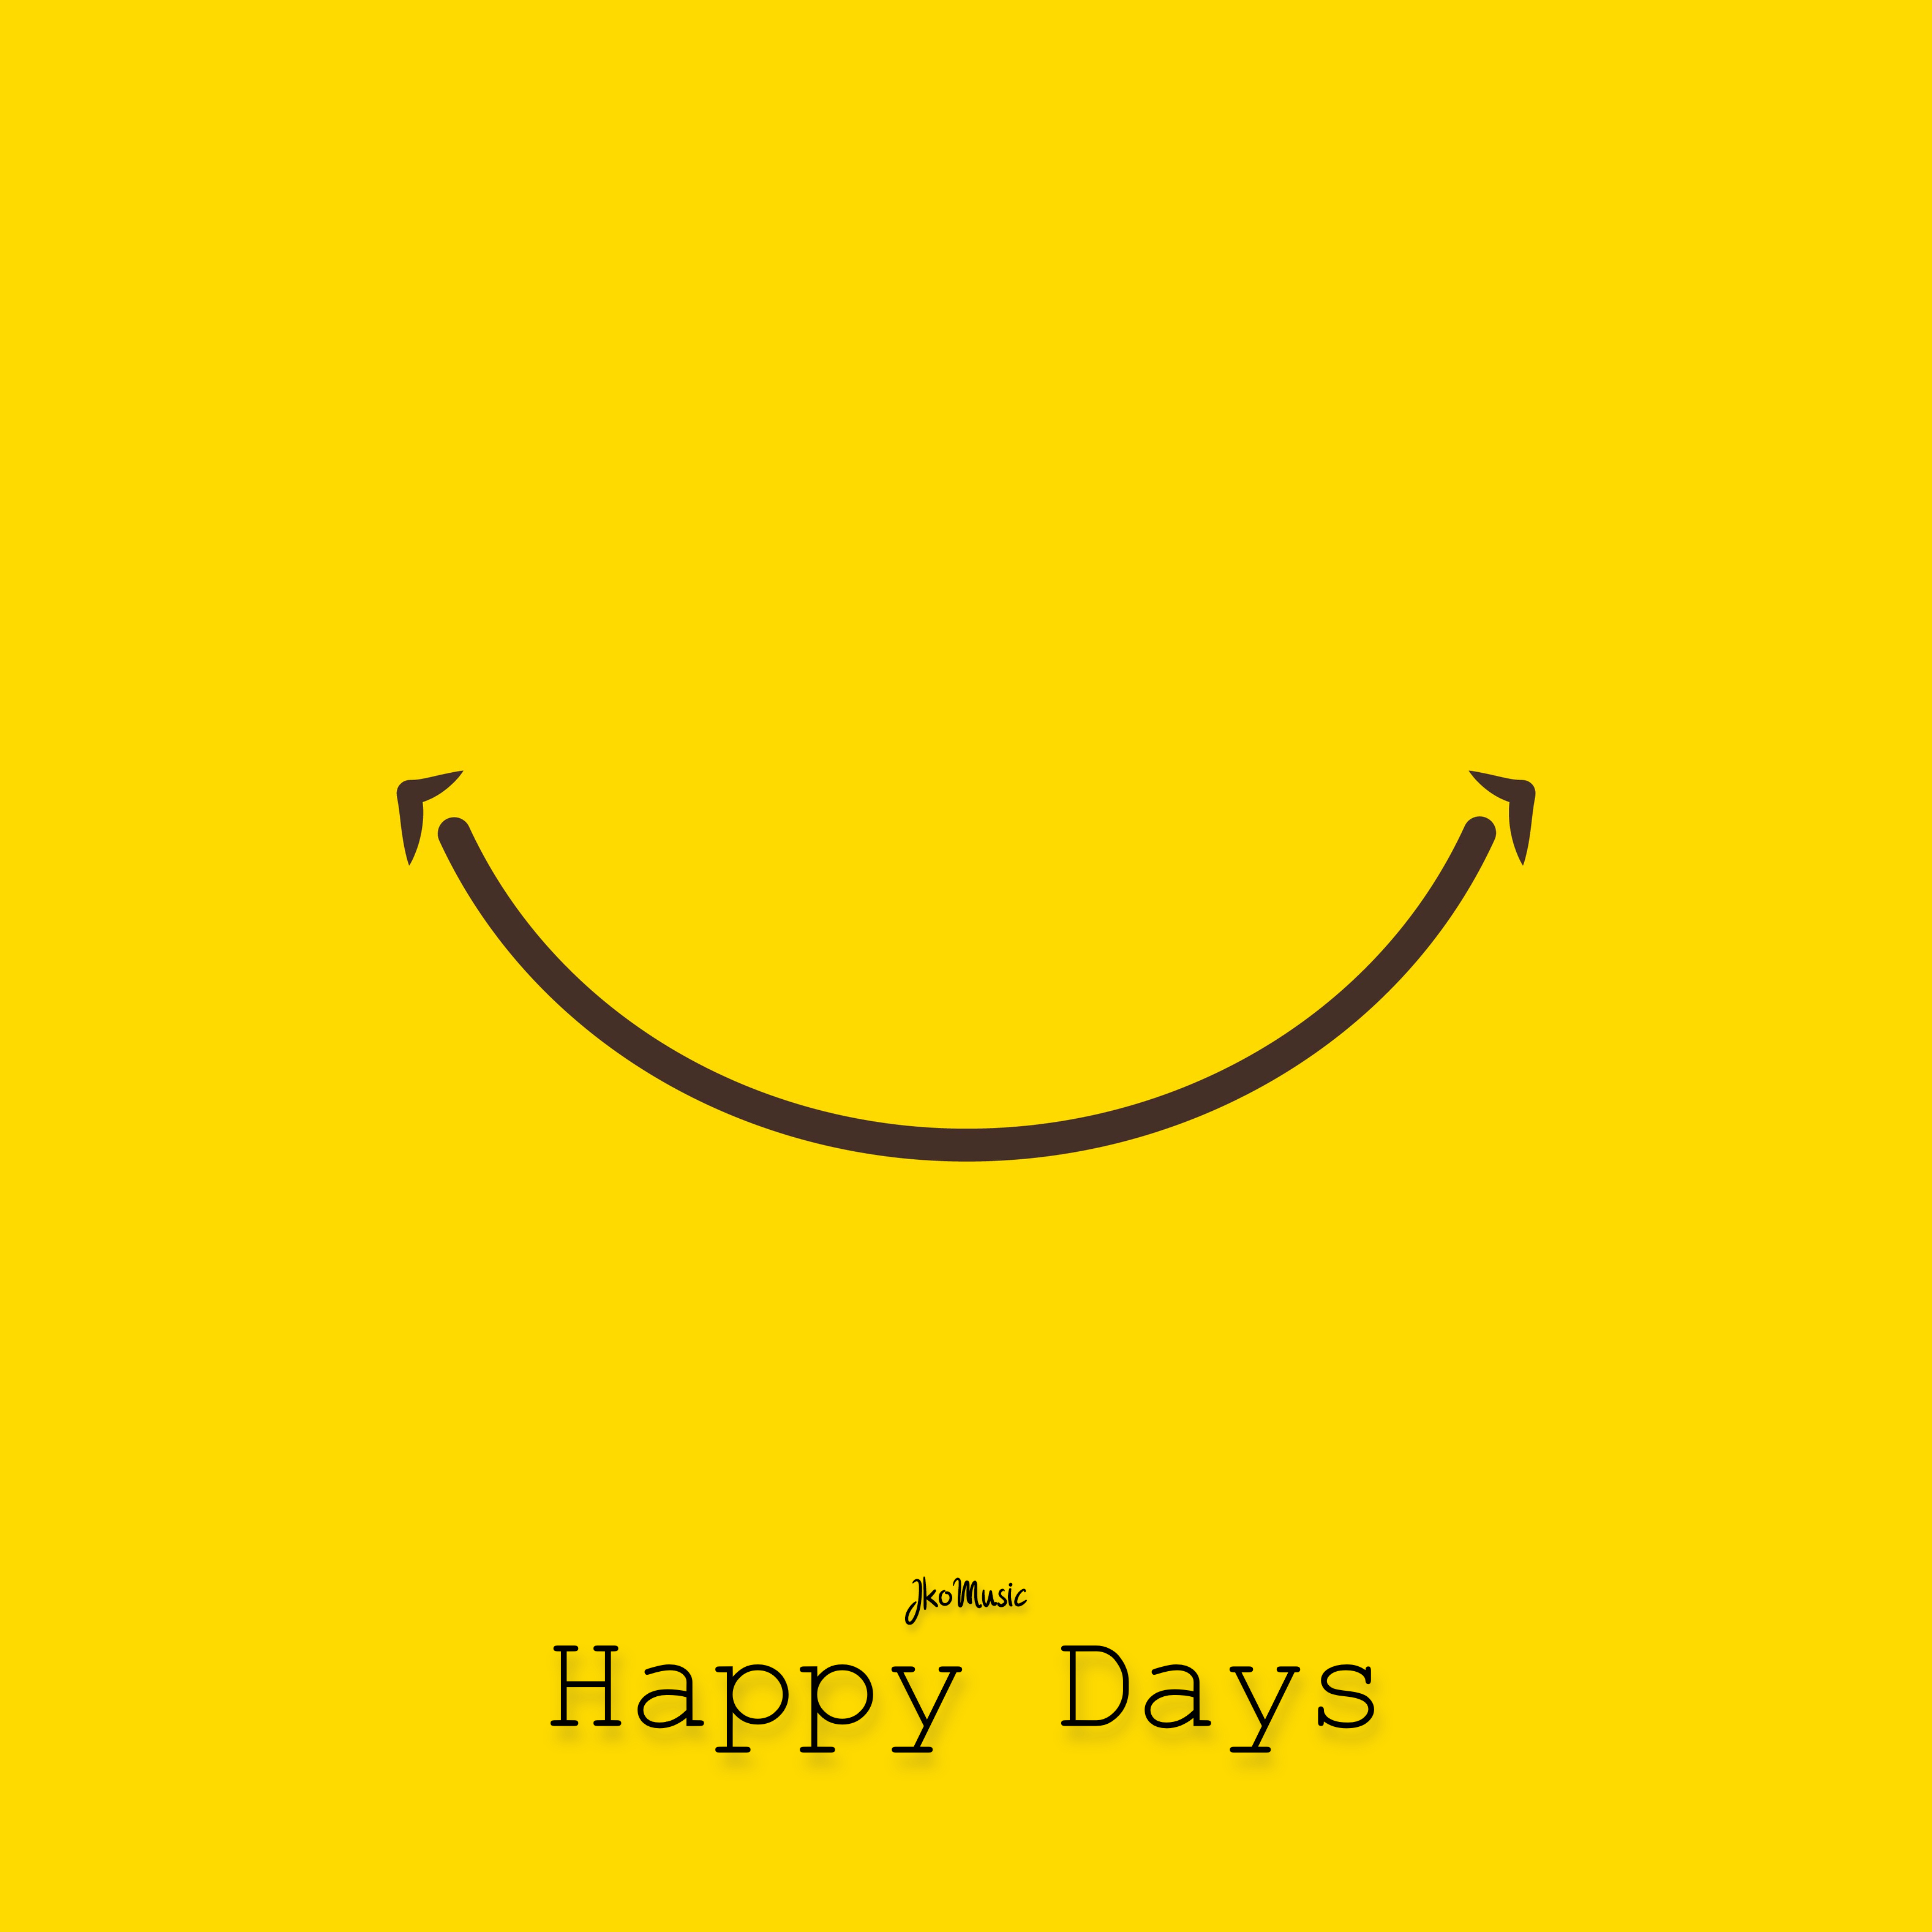 JkoMusic – “Happy Days”